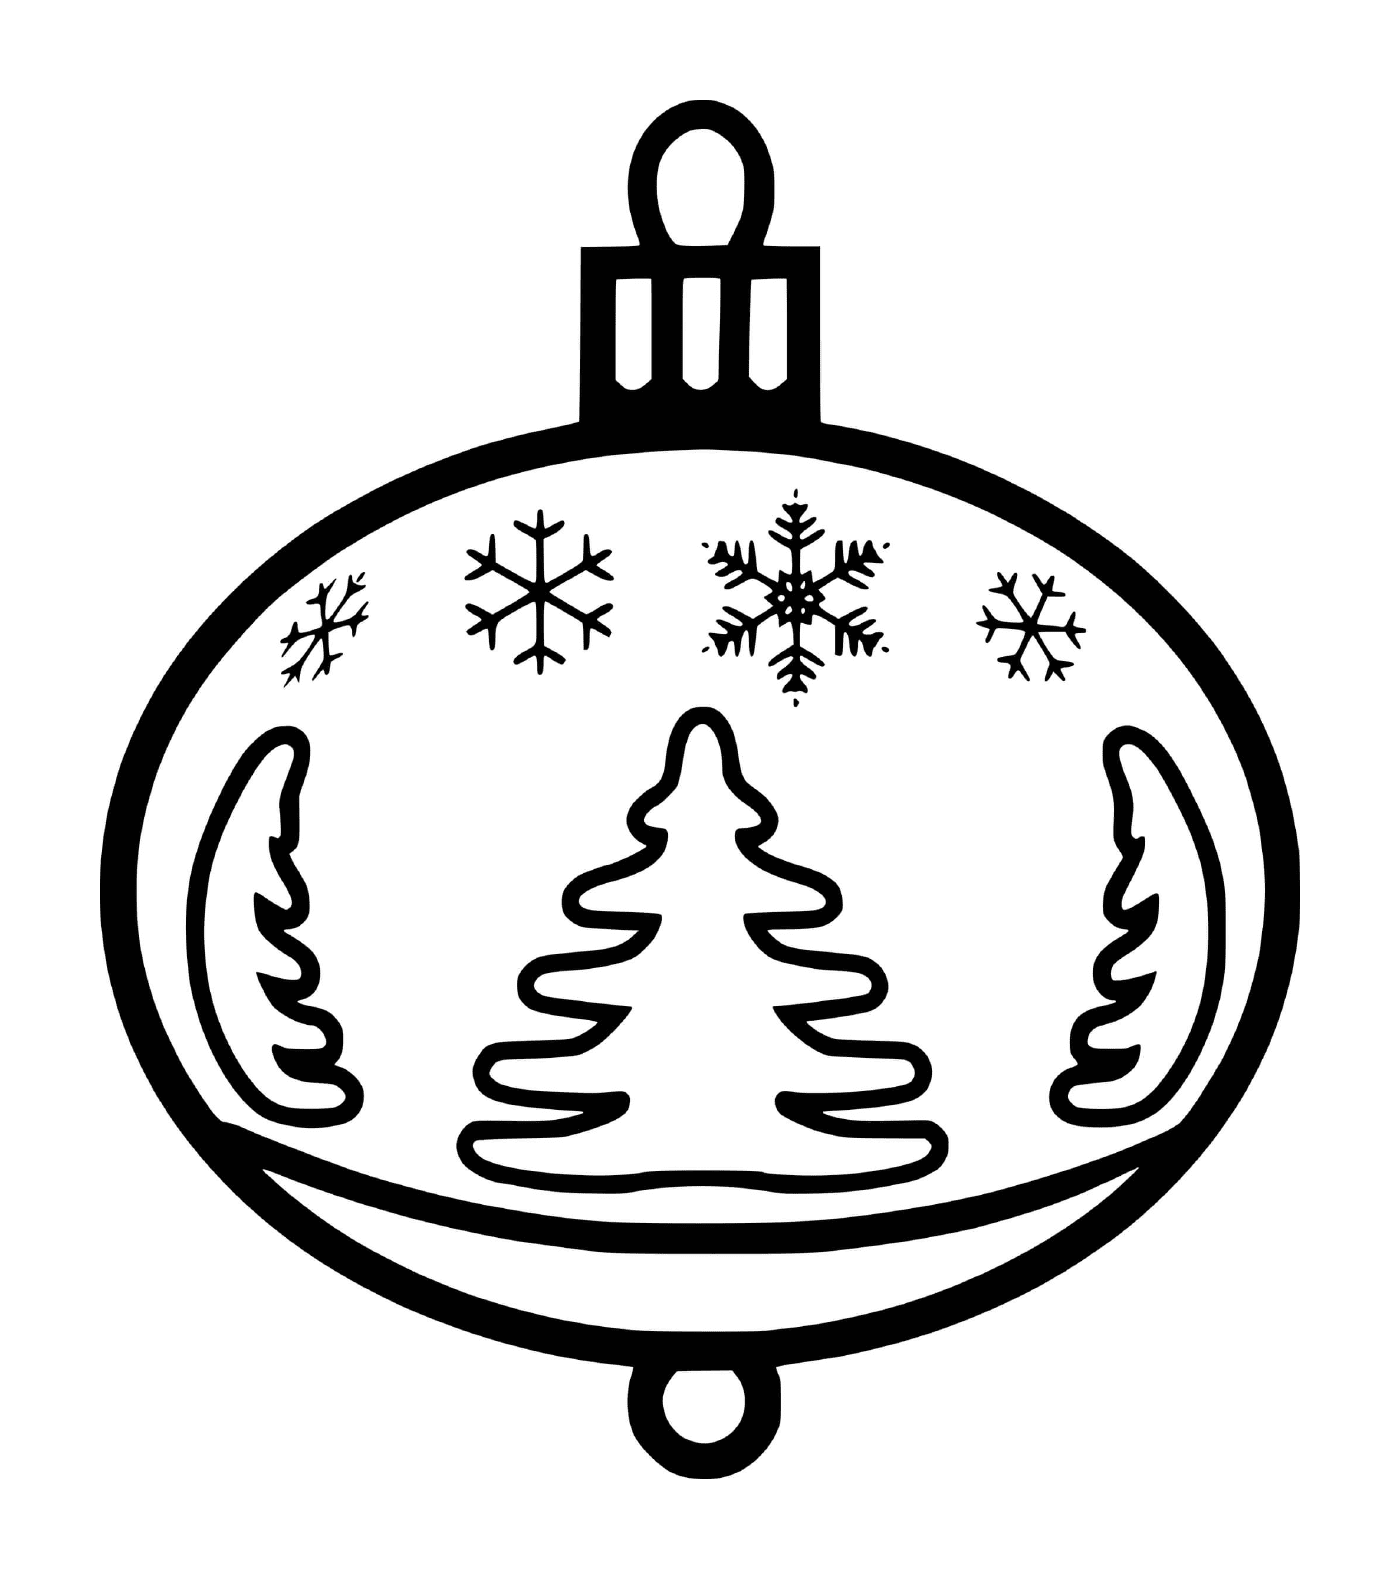  एक क्रिसमस की गेंद के साथ बर्फ के पेड़ों के साथ 